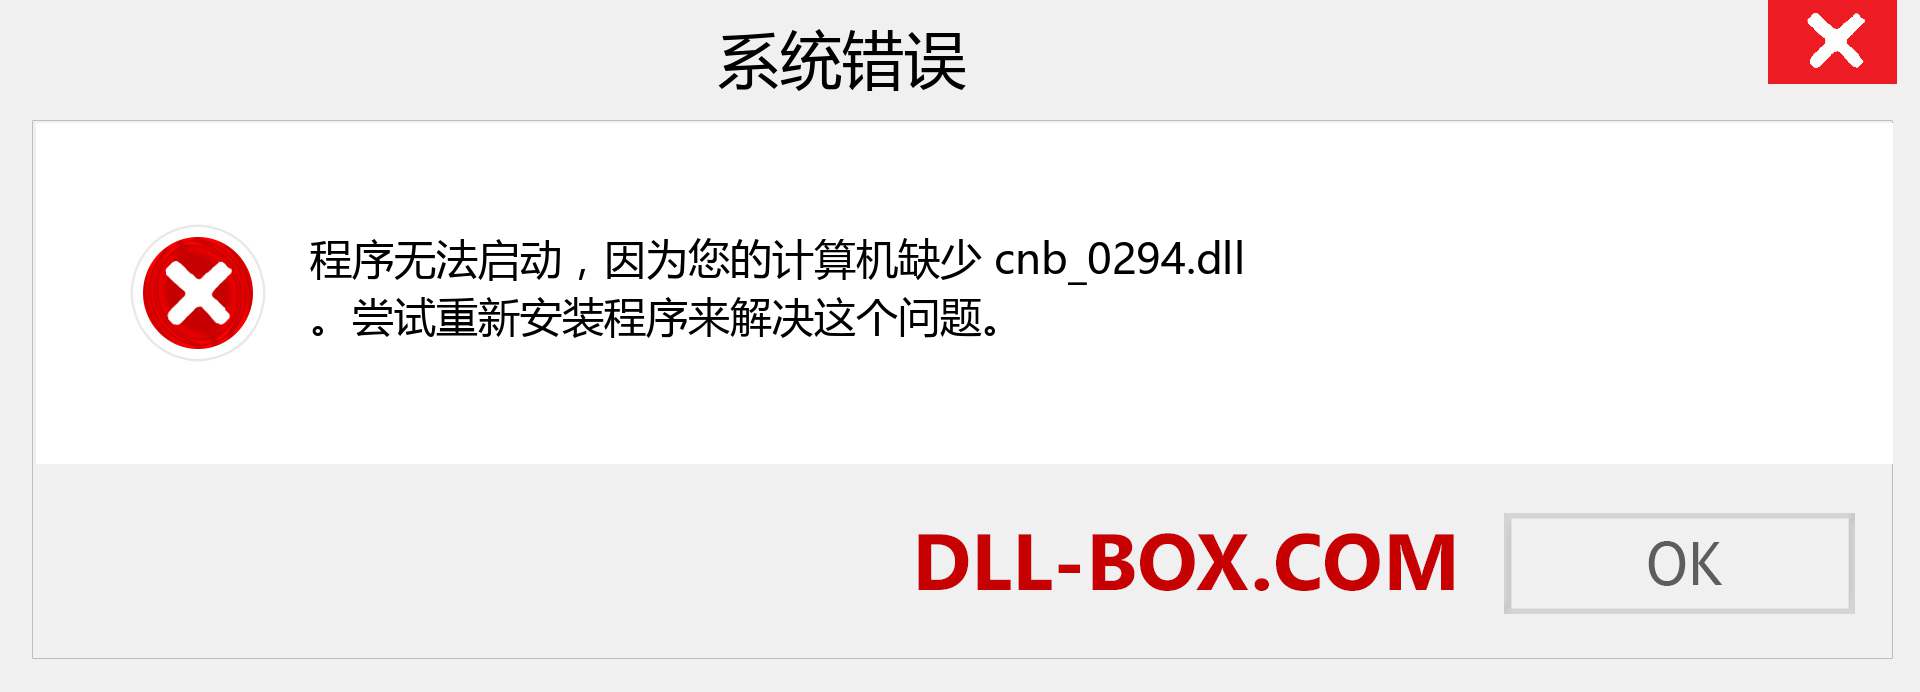 cnb_0294.dll 文件丢失？。 适用于 Windows 7、8、10 的下载 - 修复 Windows、照片、图像上的 cnb_0294 dll 丢失错误